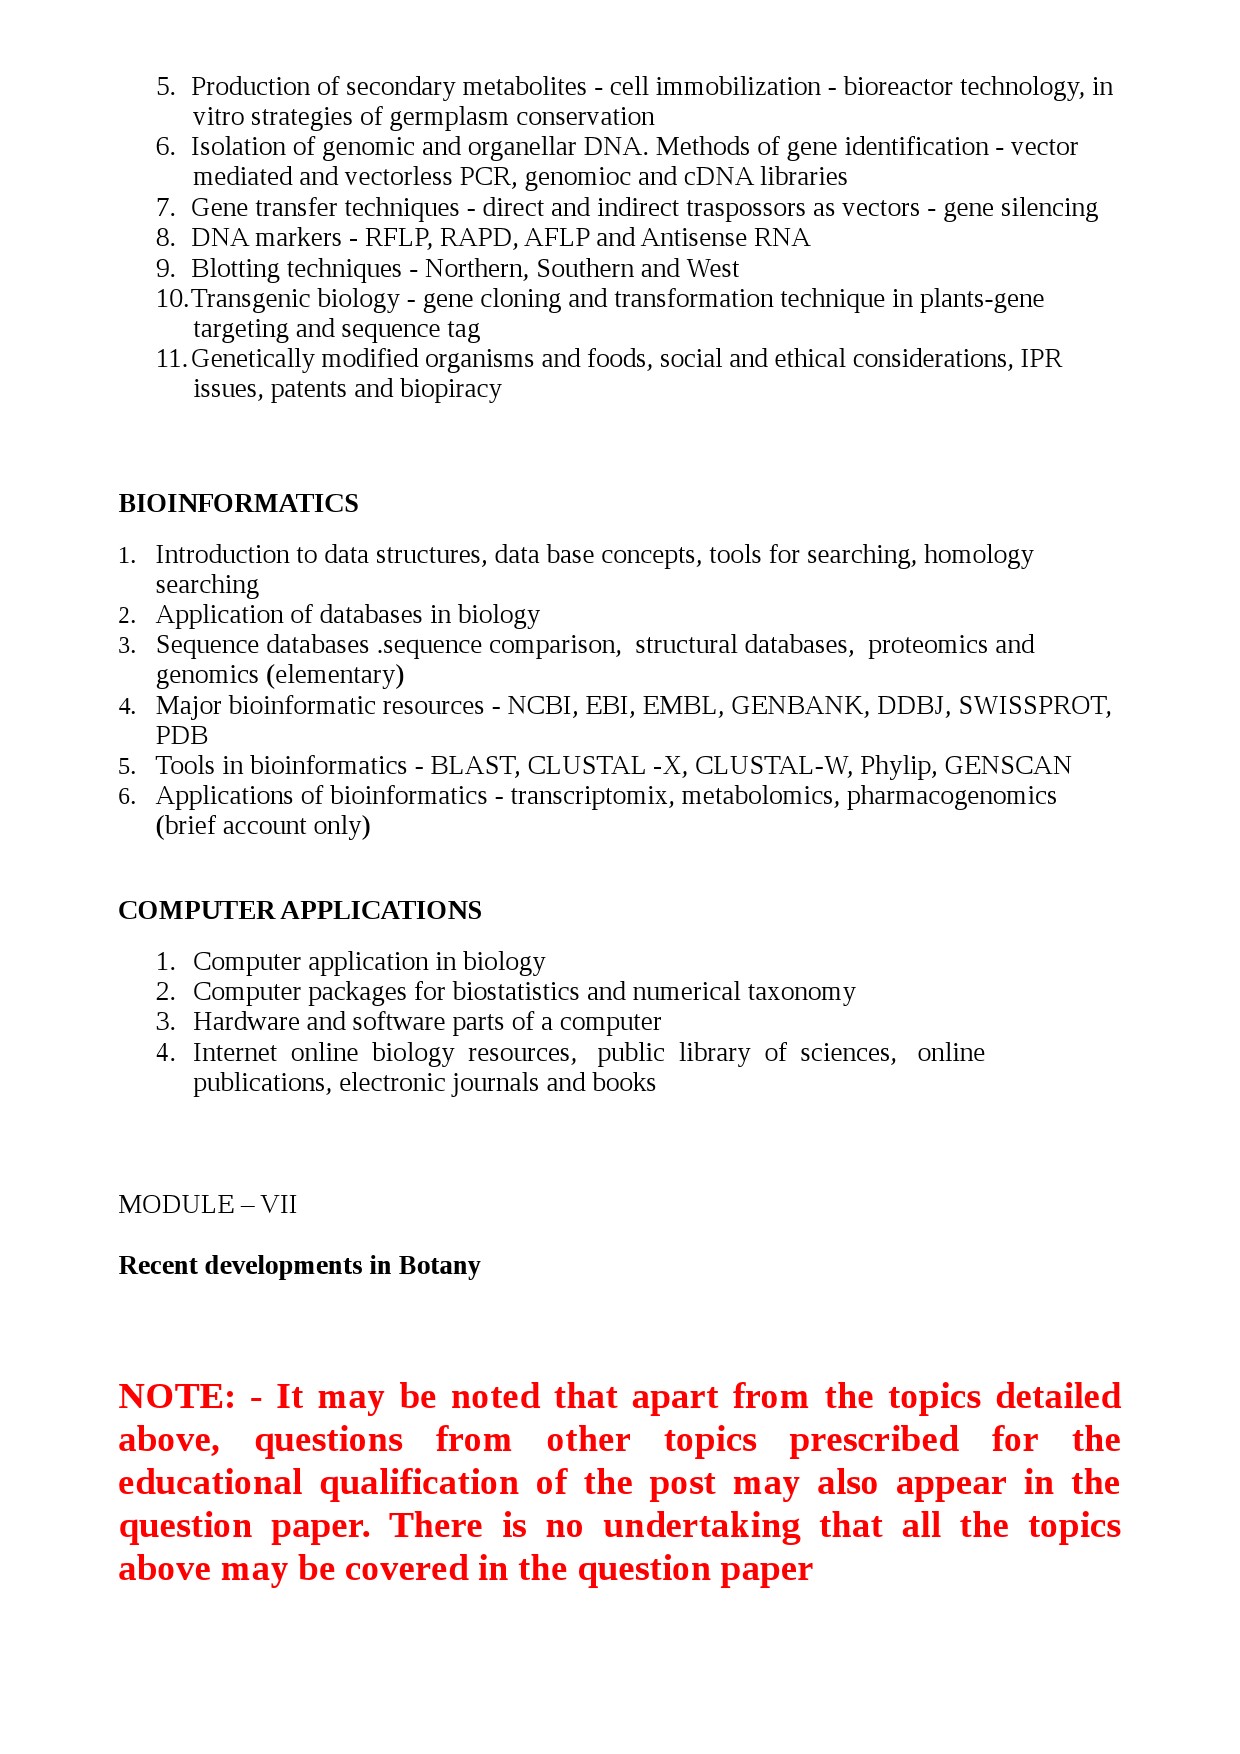 KPSC Syllabus 2021 Scientific Officer Biology - Notification Image 20